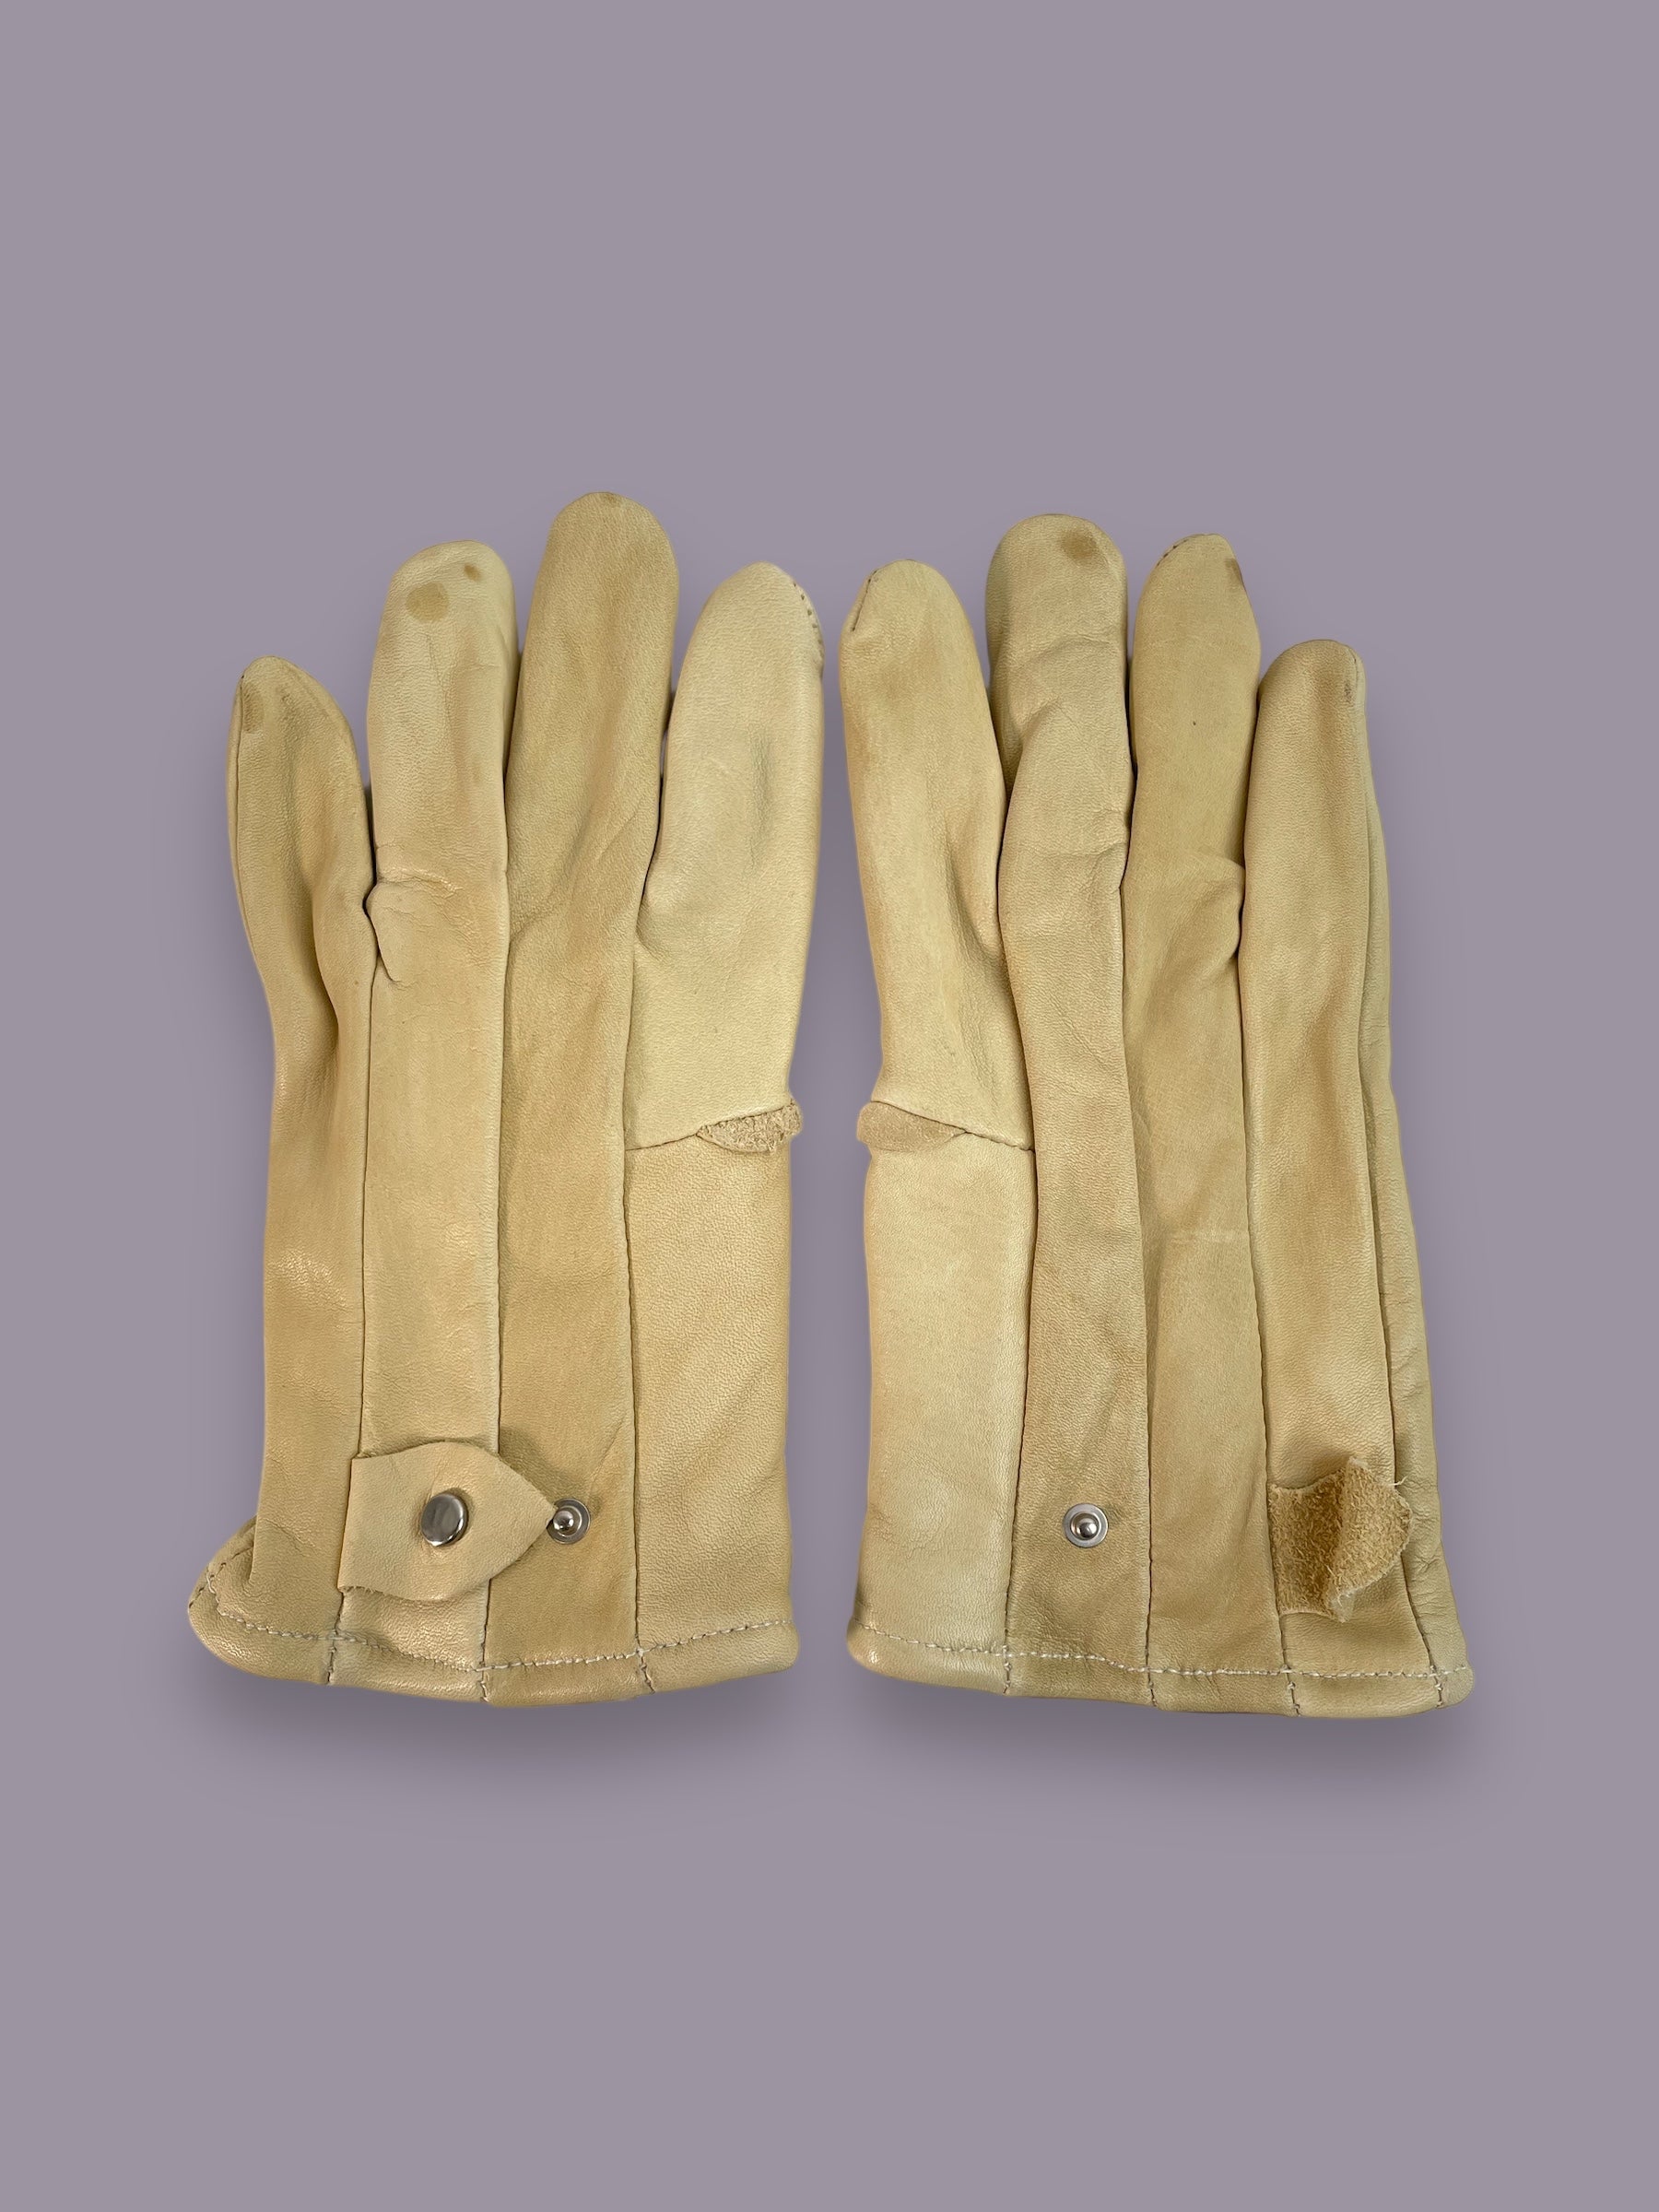 Pair of Kangaroo Leather Tan Gloves in size Medium